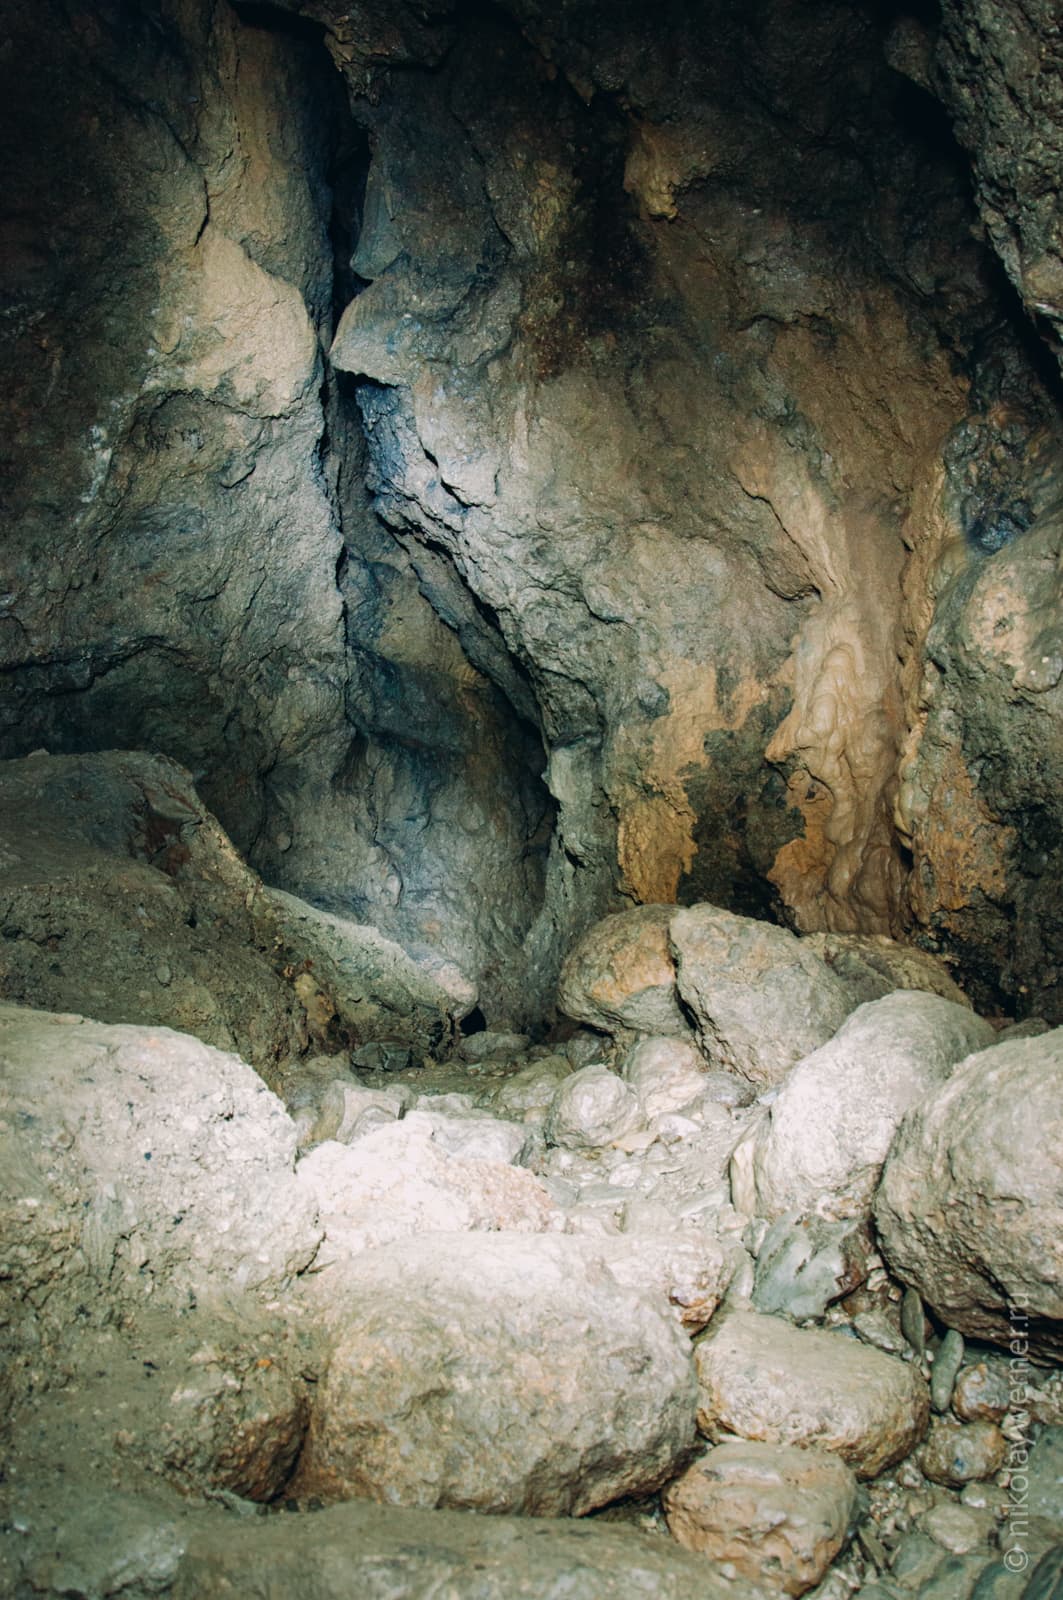 Внтури пещеры. Большущие камни под ногами, причудливо изонутые стены уходят вверх. Камни, камни, камни